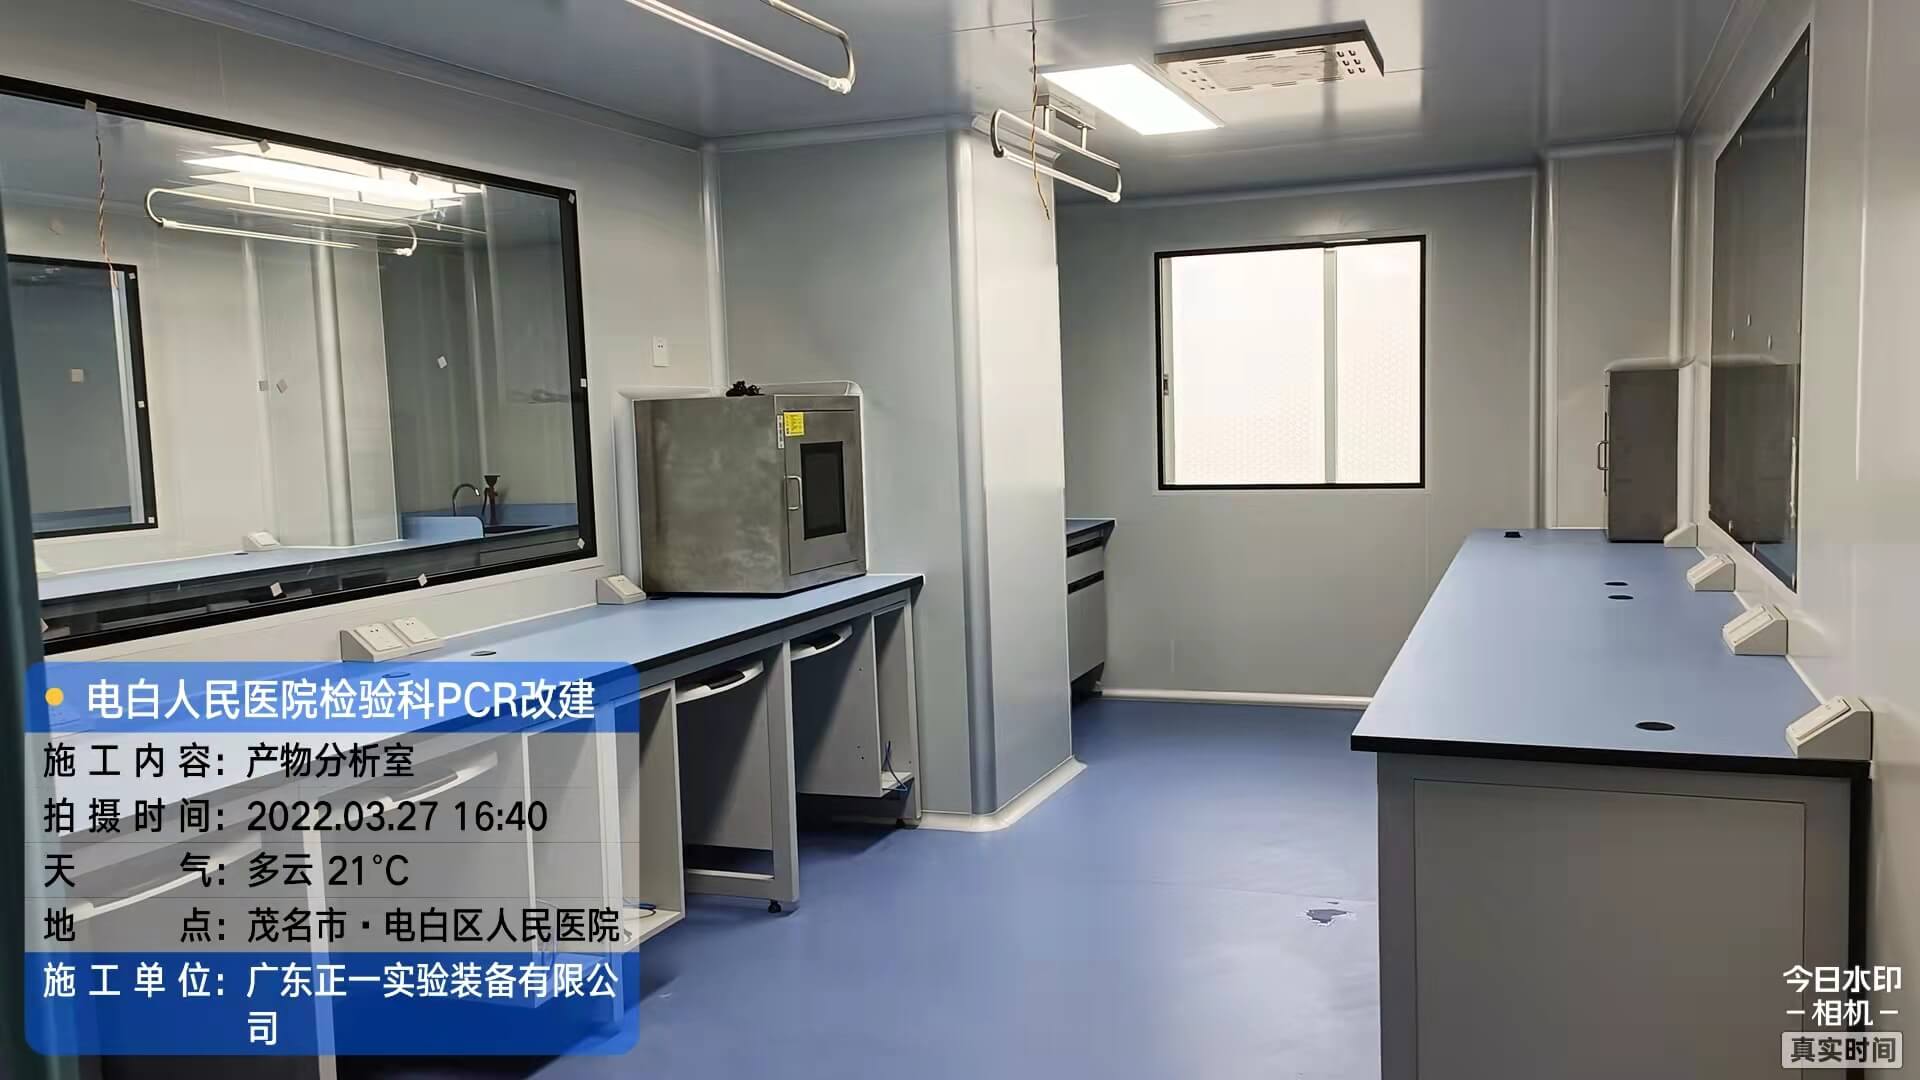 茂名市电白区人民医院外科综合楼12、13层改建检验科及PCR实验室工程 (30)